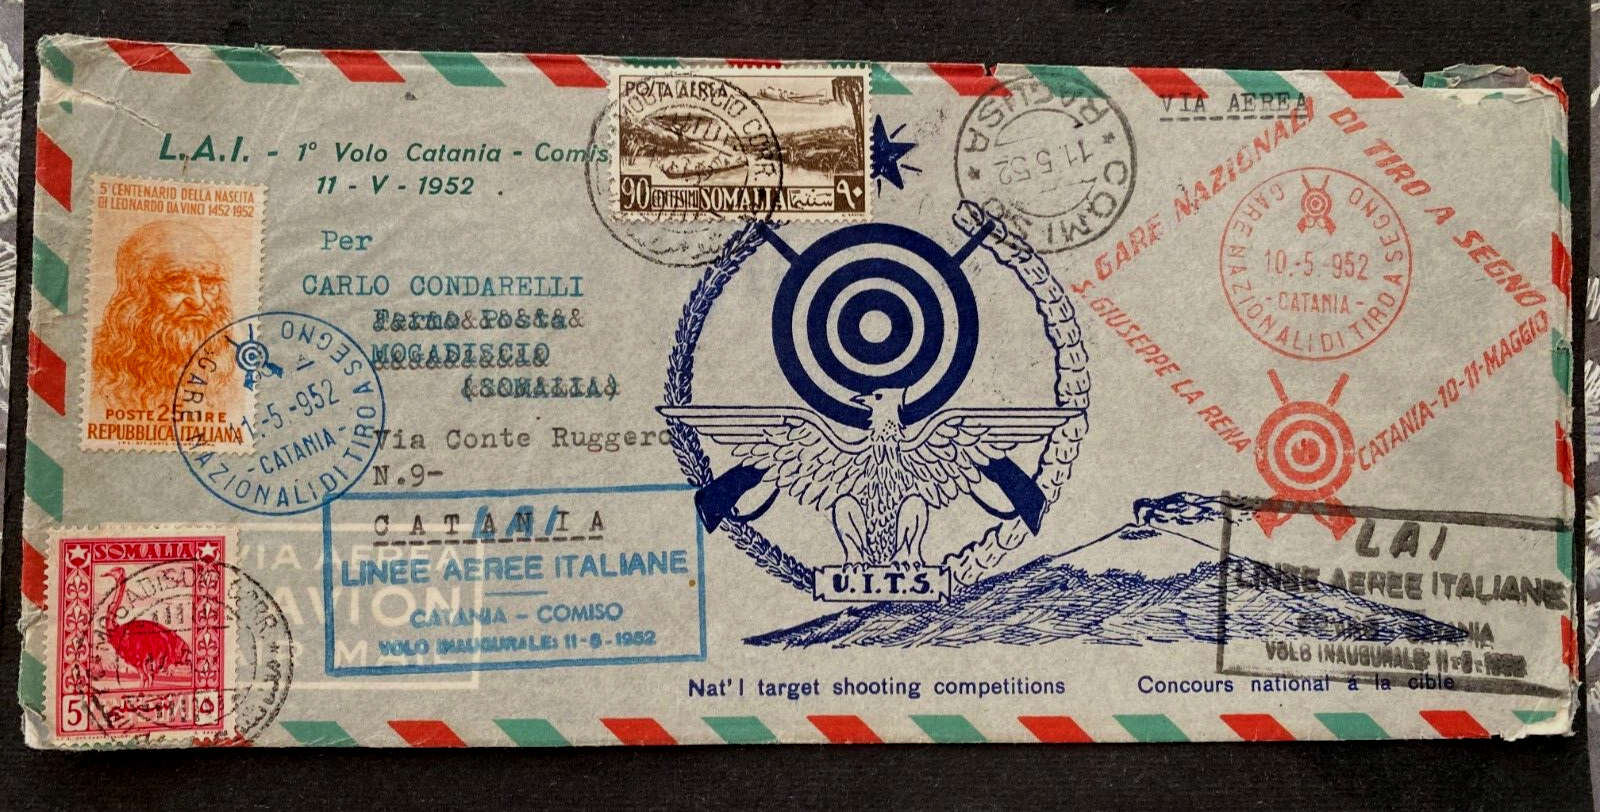 Italy 1952 Rare Airmail to Mogadiscio SOMALIA  LAI First Flight CataniaComiso